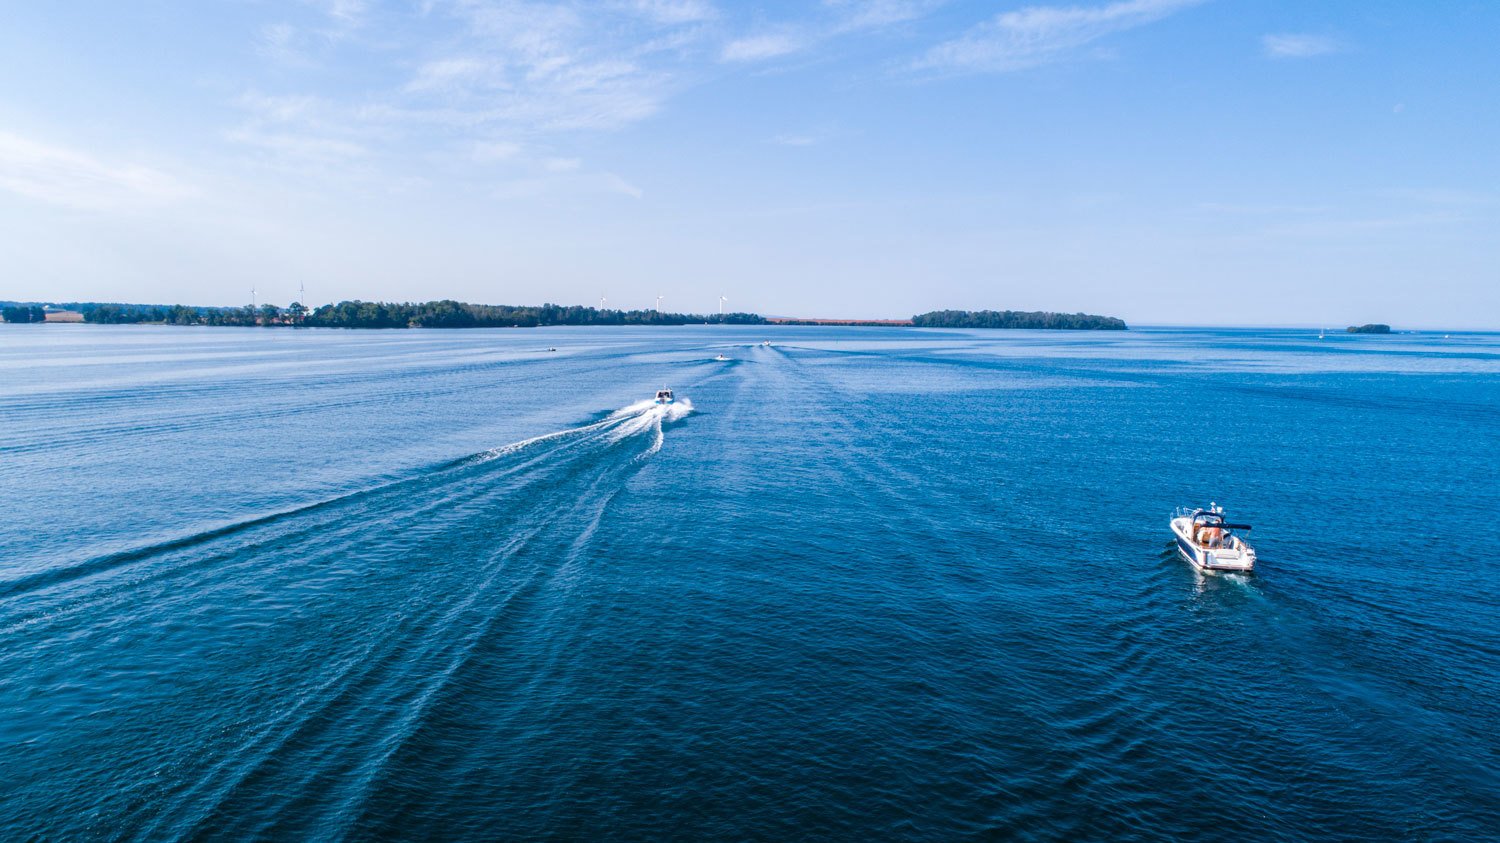 Drönarfoto över klarblått vatten och himmel. I vattnet åker två motorbåtar.